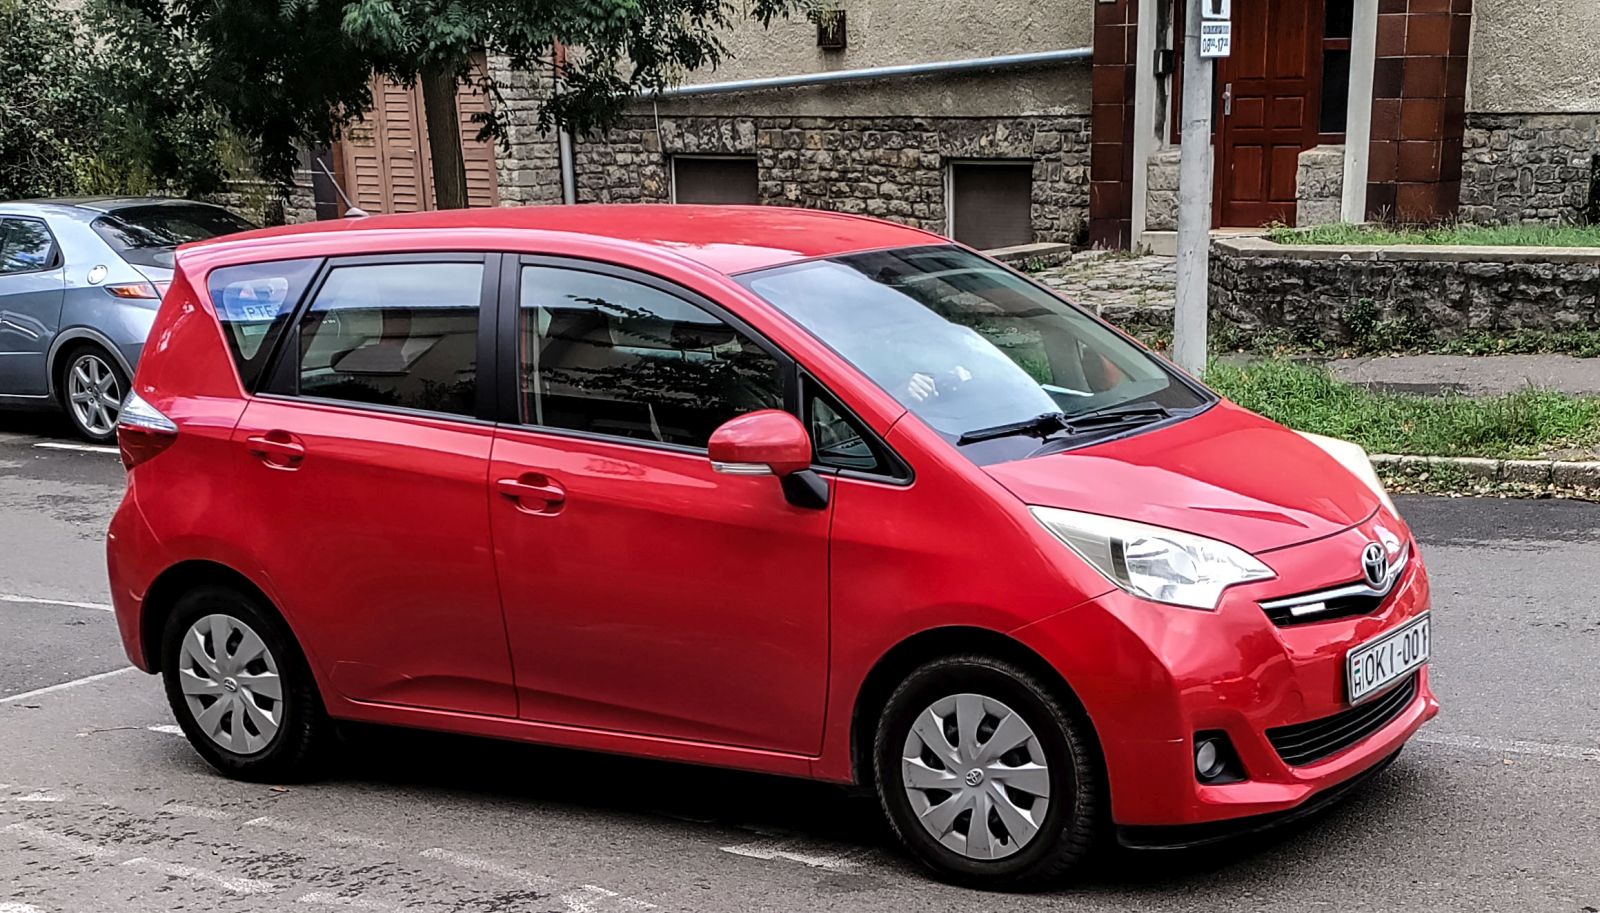 Diesen roter Toyota Verso S habe ich in 09.2022 gesehen.